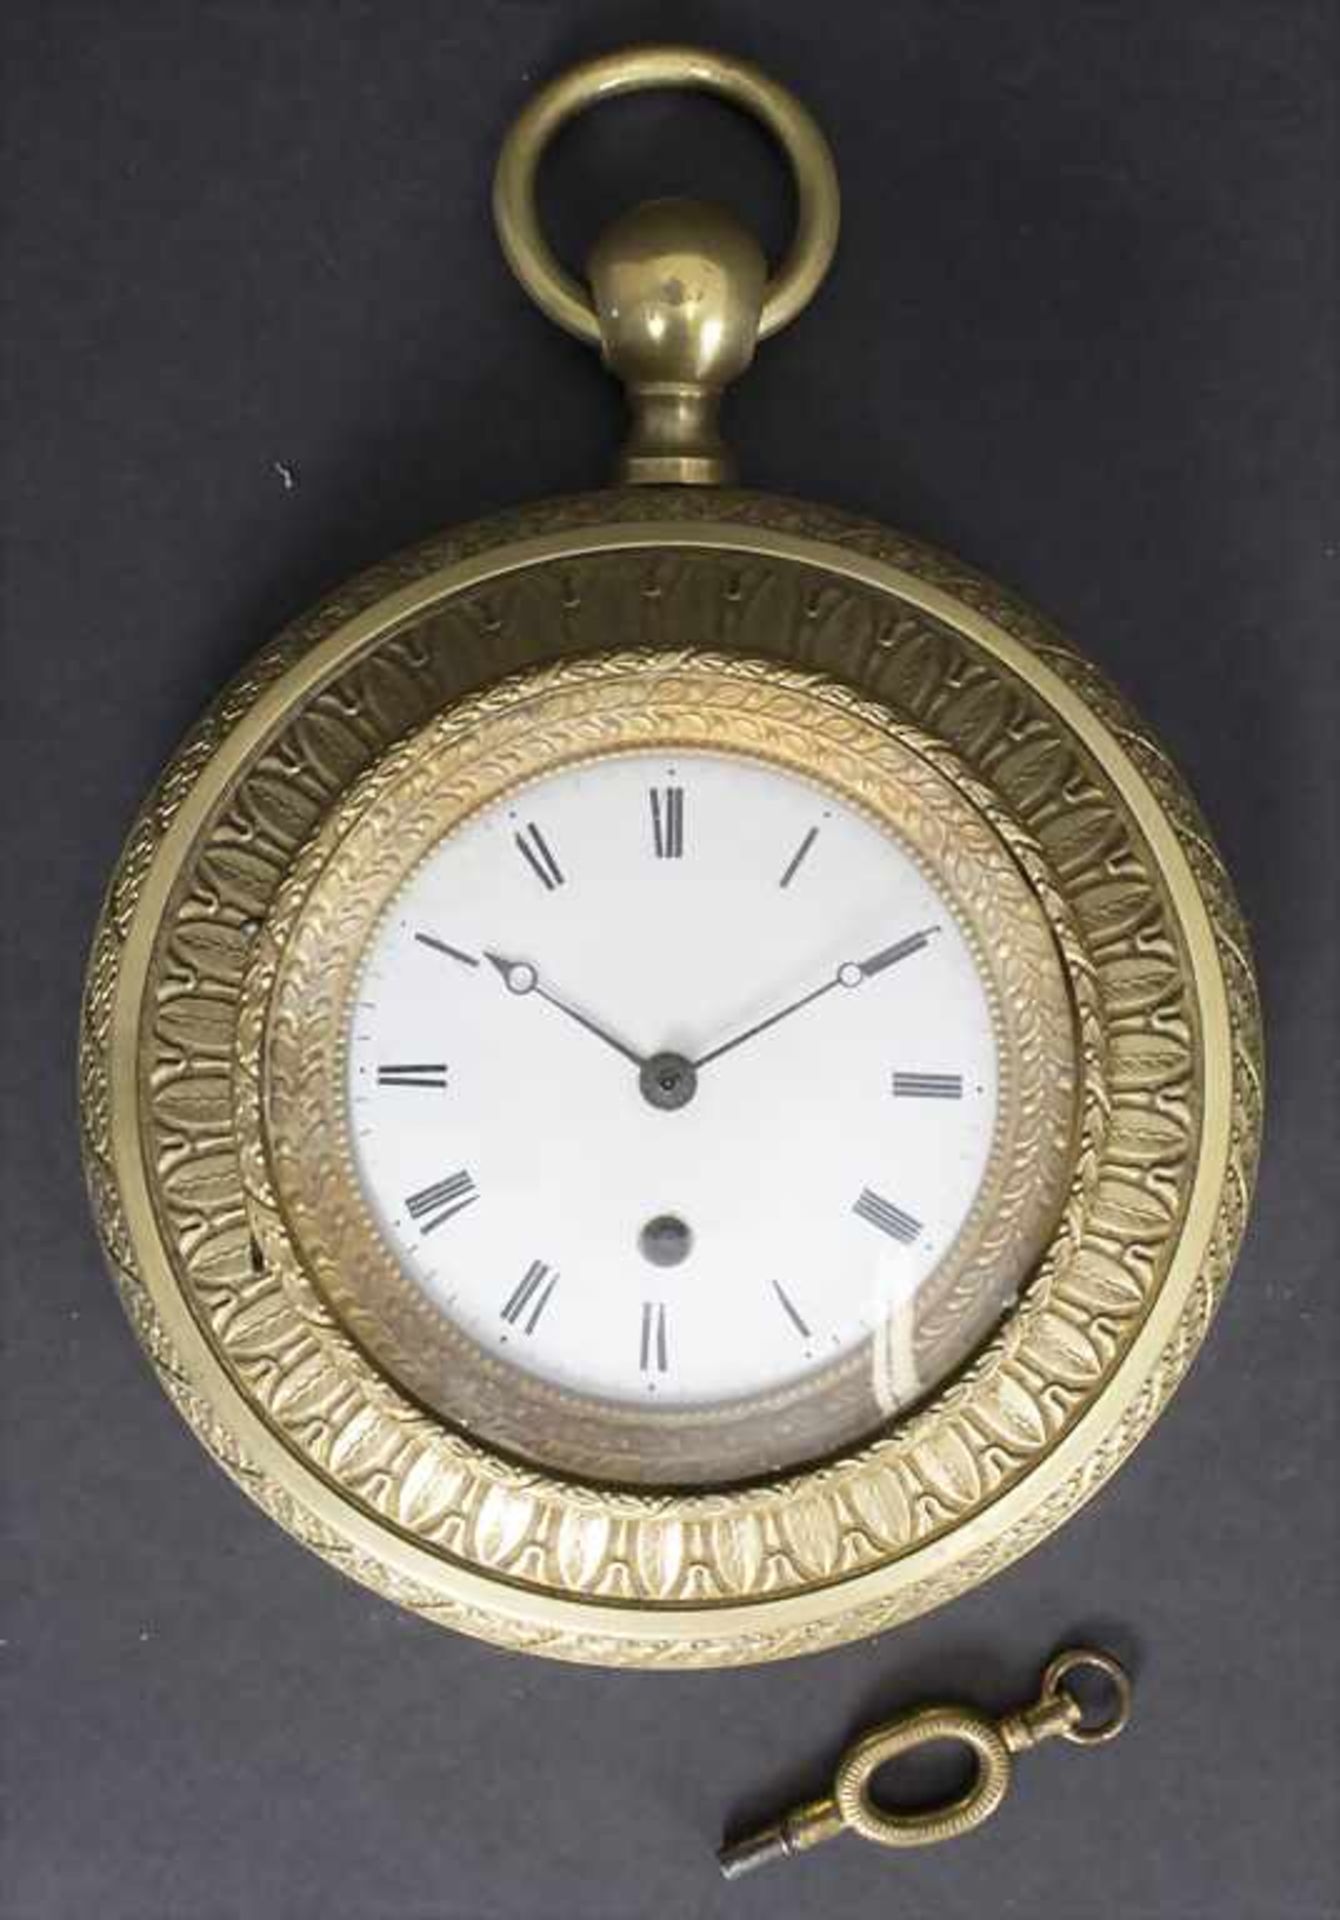 Wanduhr / A wall clock, Frankreich, um 1830Gehäuse: Bronze vergoldet,Werk: Spindelwerk mit